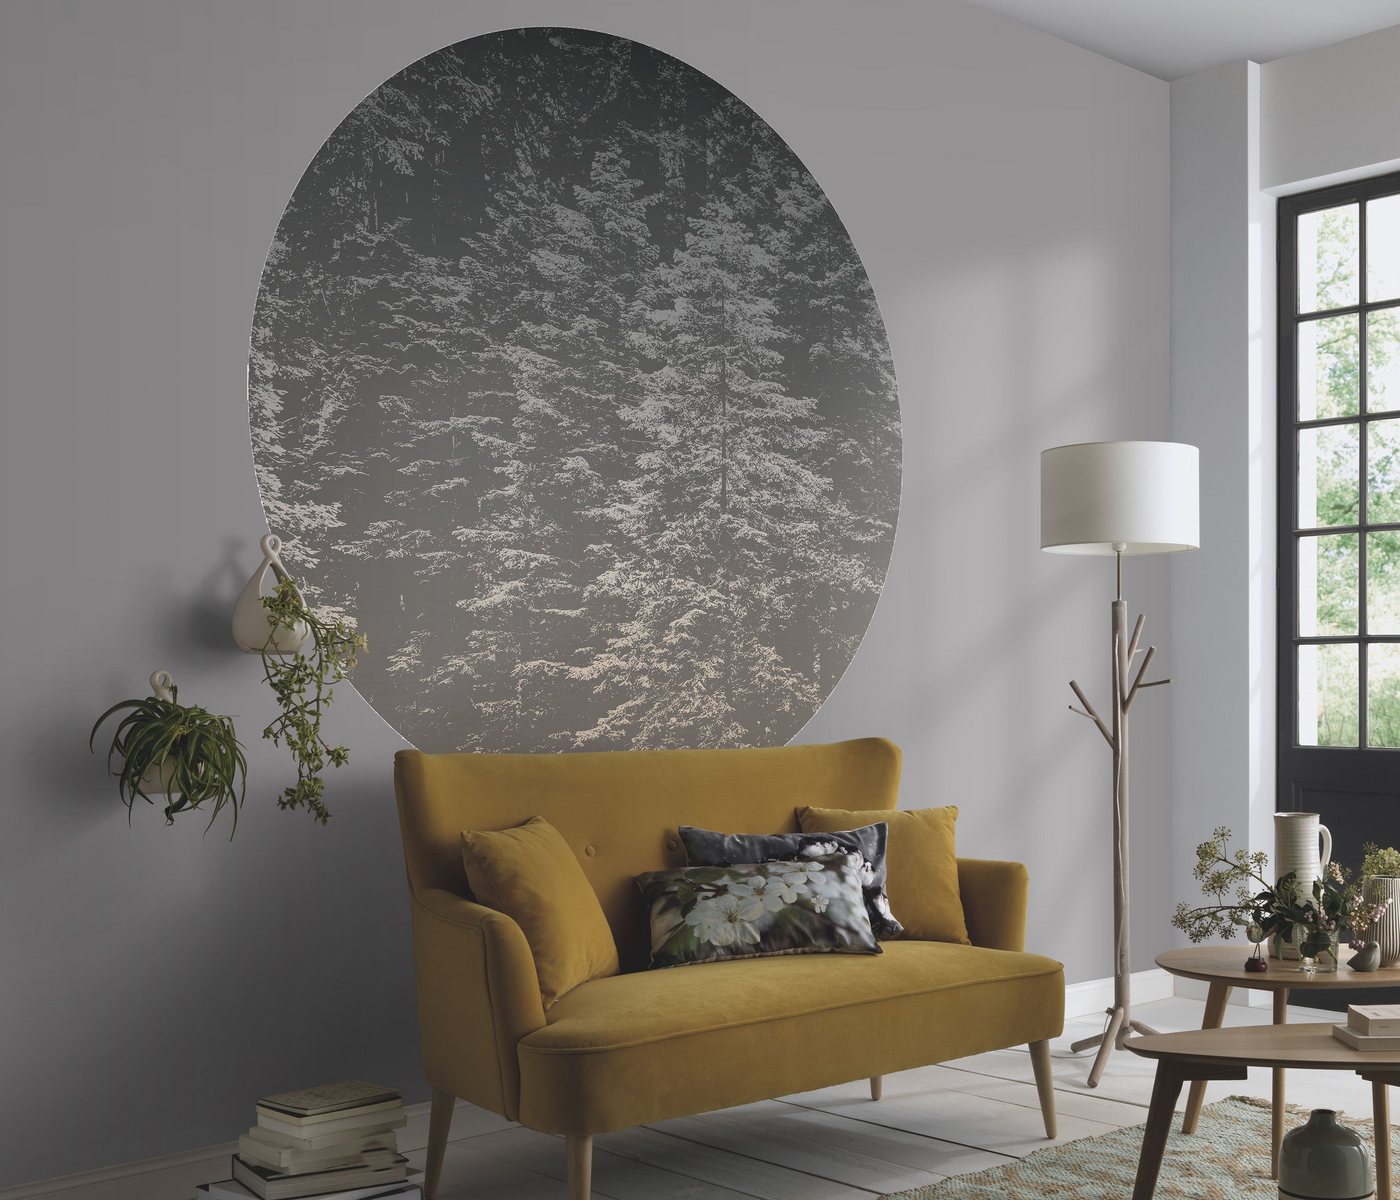 Newroom Vliestapete, [ 1,4 x 1,4 m ] großzügiges Motiv - kein wiederkehrendes Muster - Fototapete Wandbild Wald Tanne Bäume Made in Germany von Newroom